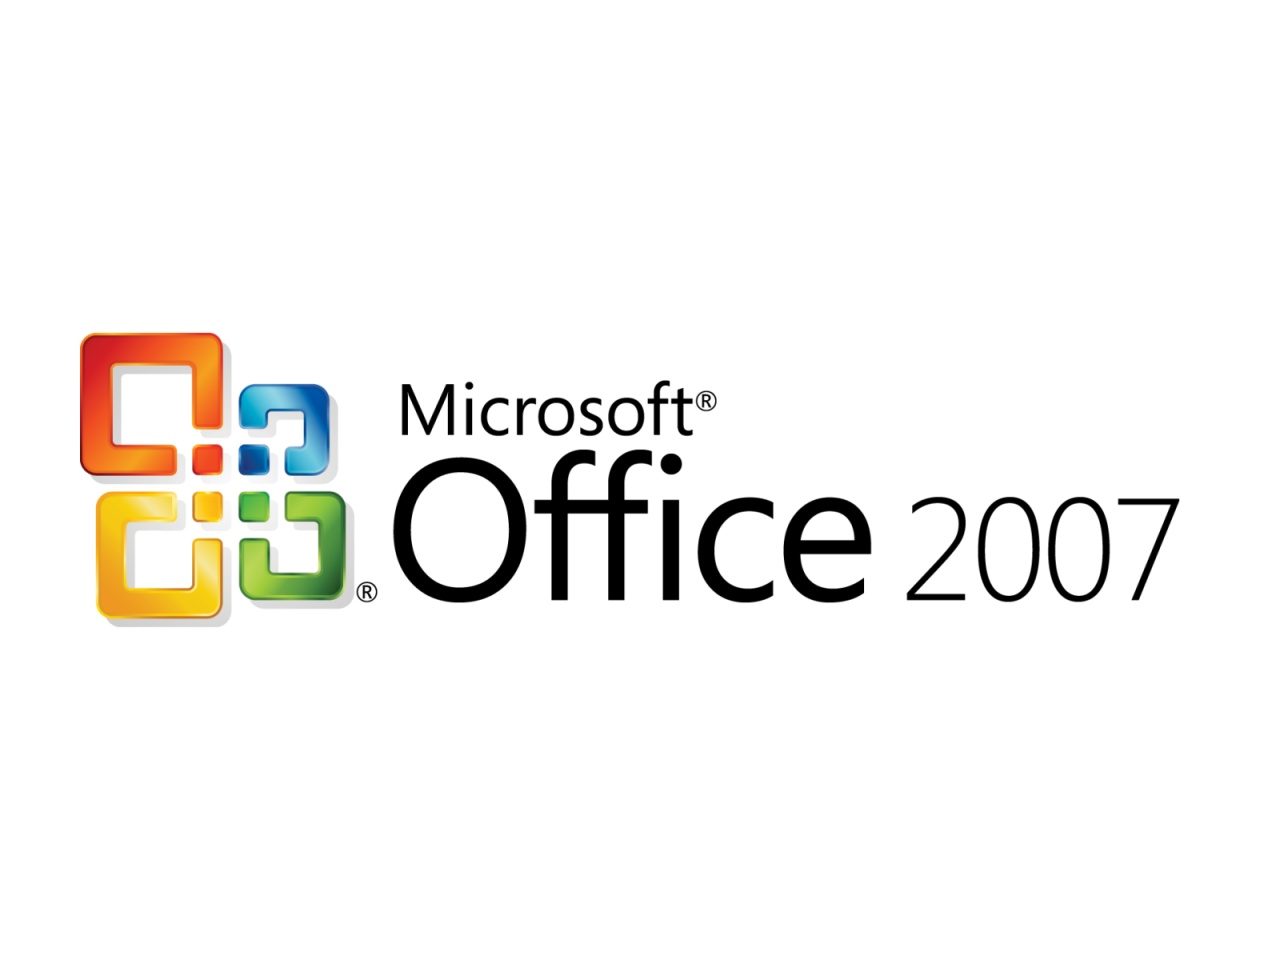 обновить Microsoft Office 2007 до 2010